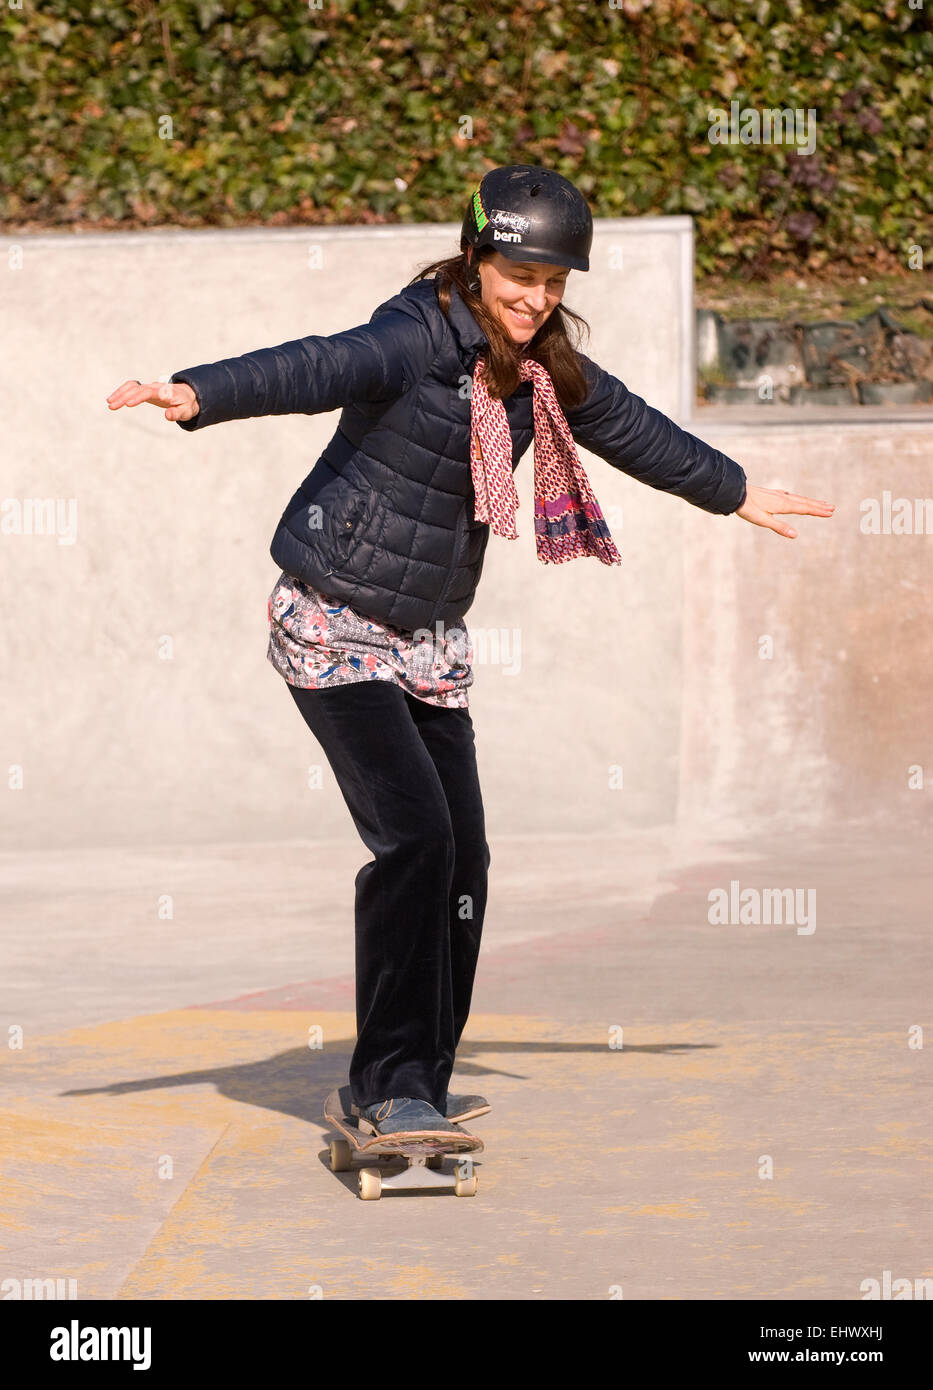 Femme s'amusant dans un skate parc, Haslemere, Surrey, UK. Banque D'Images